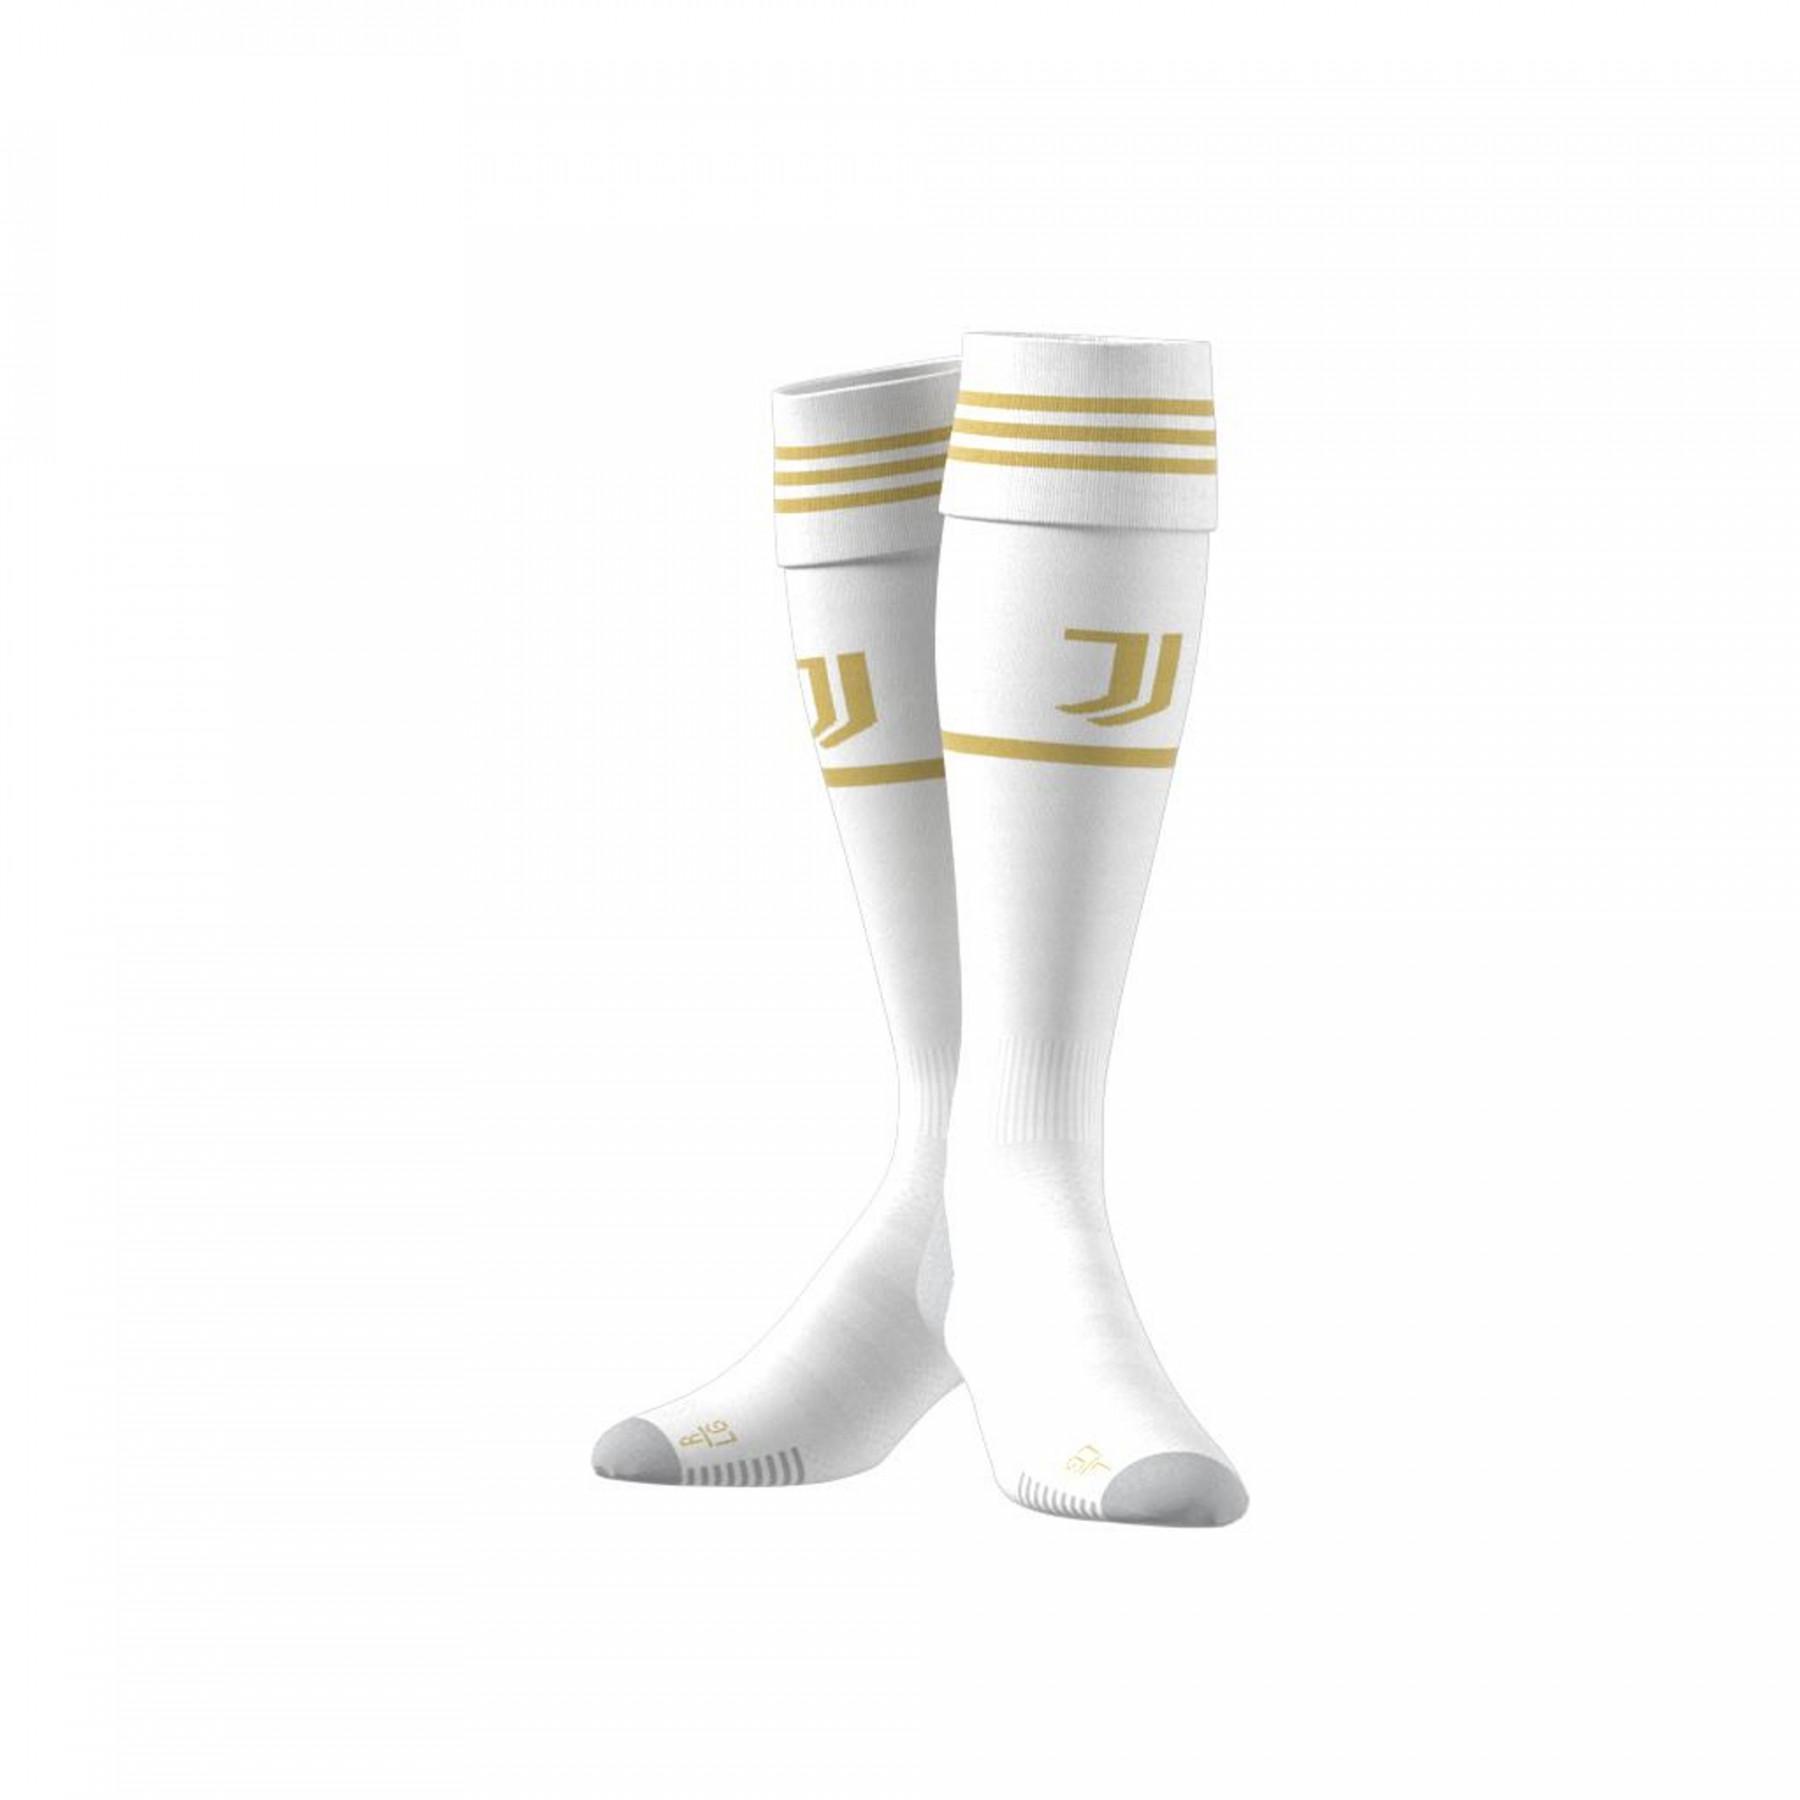 Home socks Juventus 2020/21